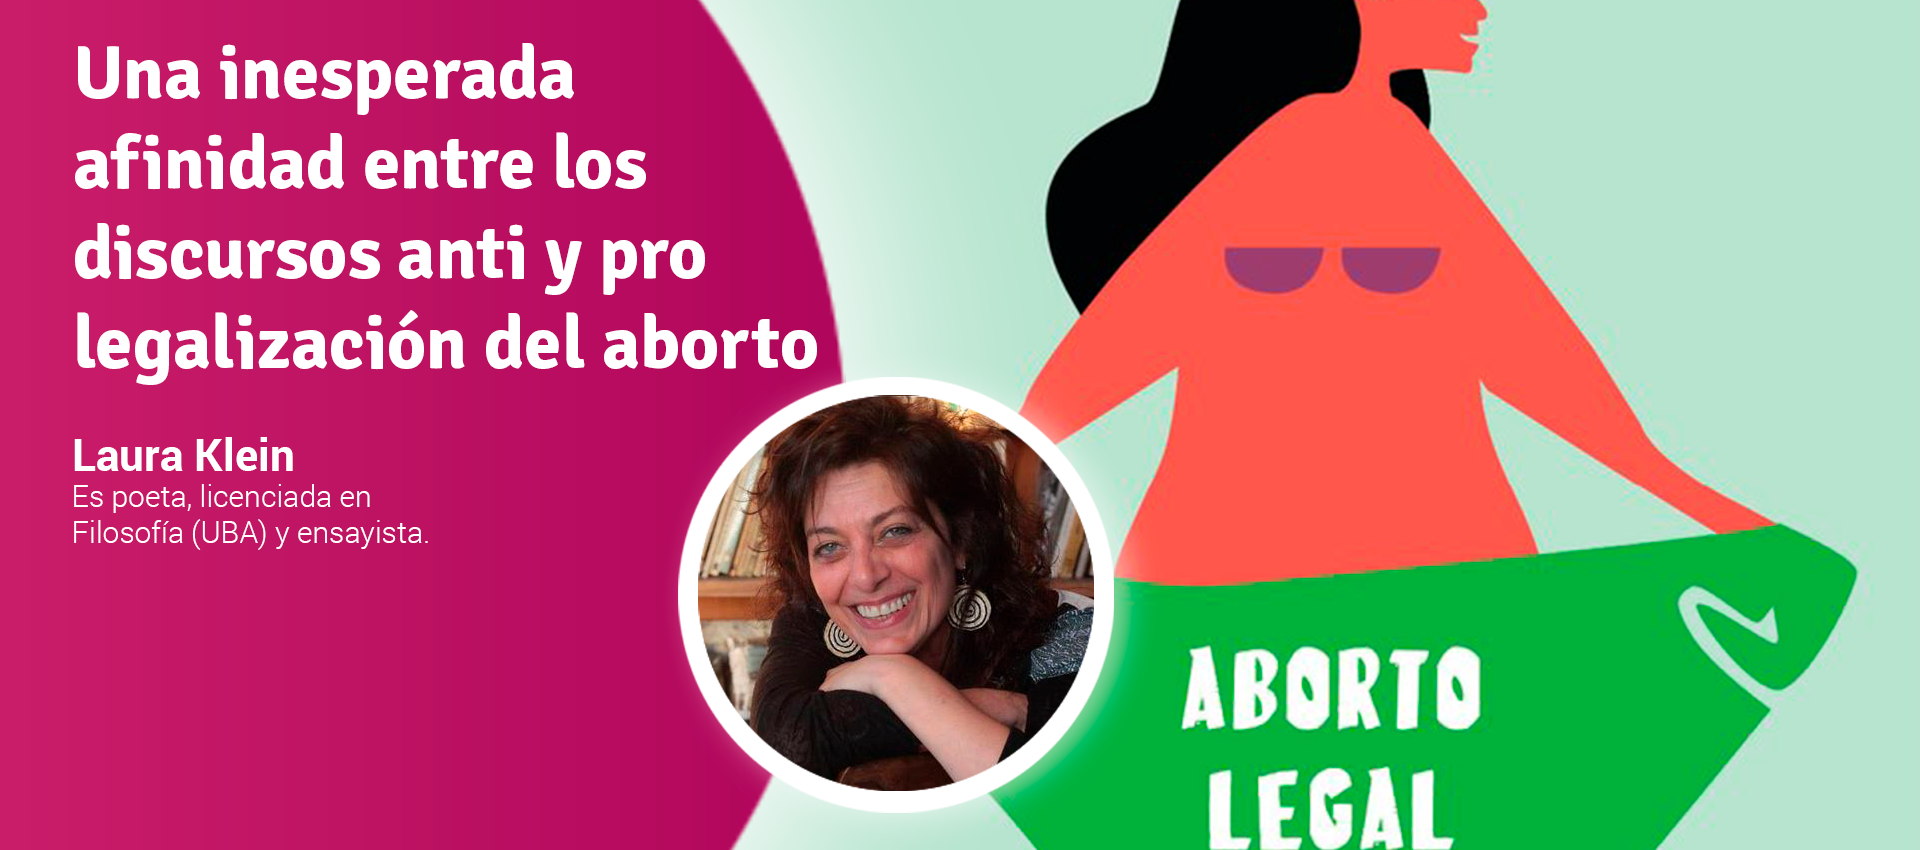 Una inesperada afinidad entre los discursos anti y pro legalización del aborto - Laura klein